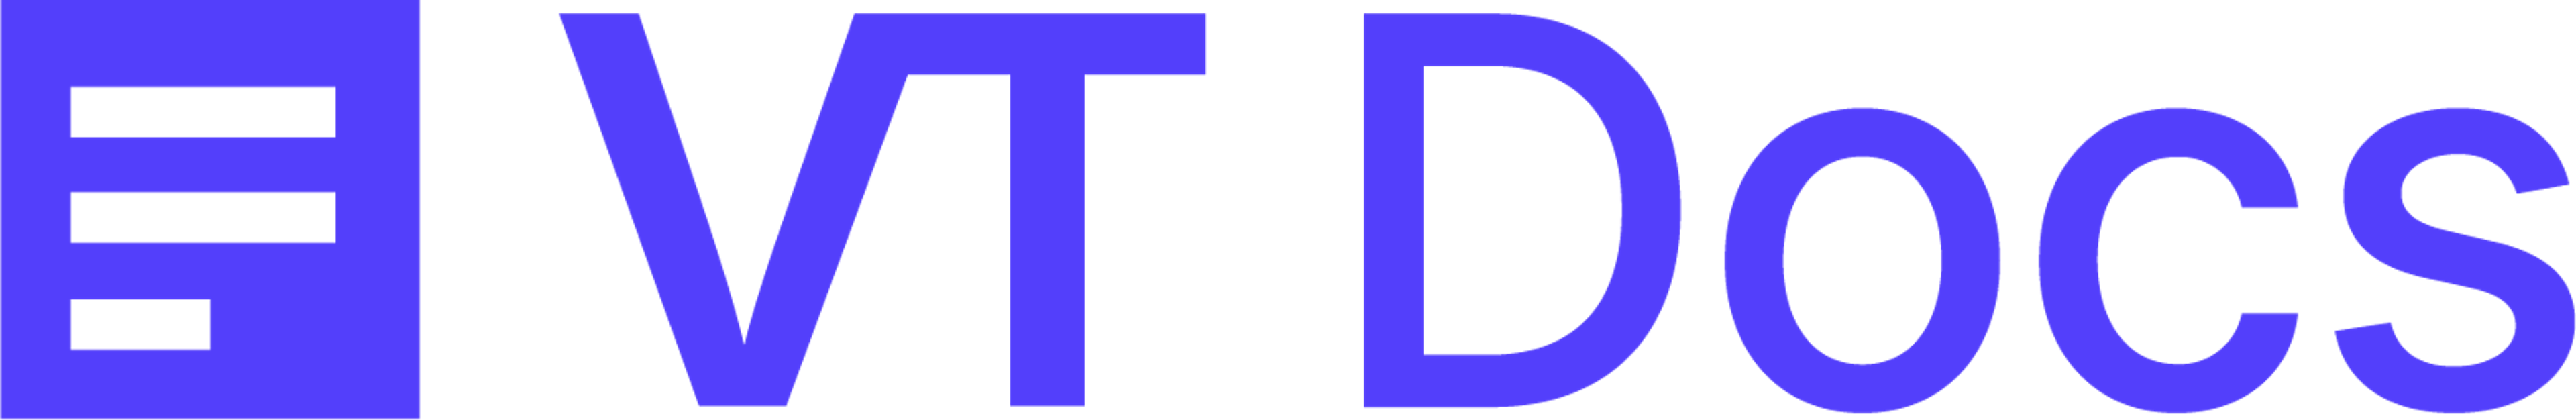 VT Docs Logo